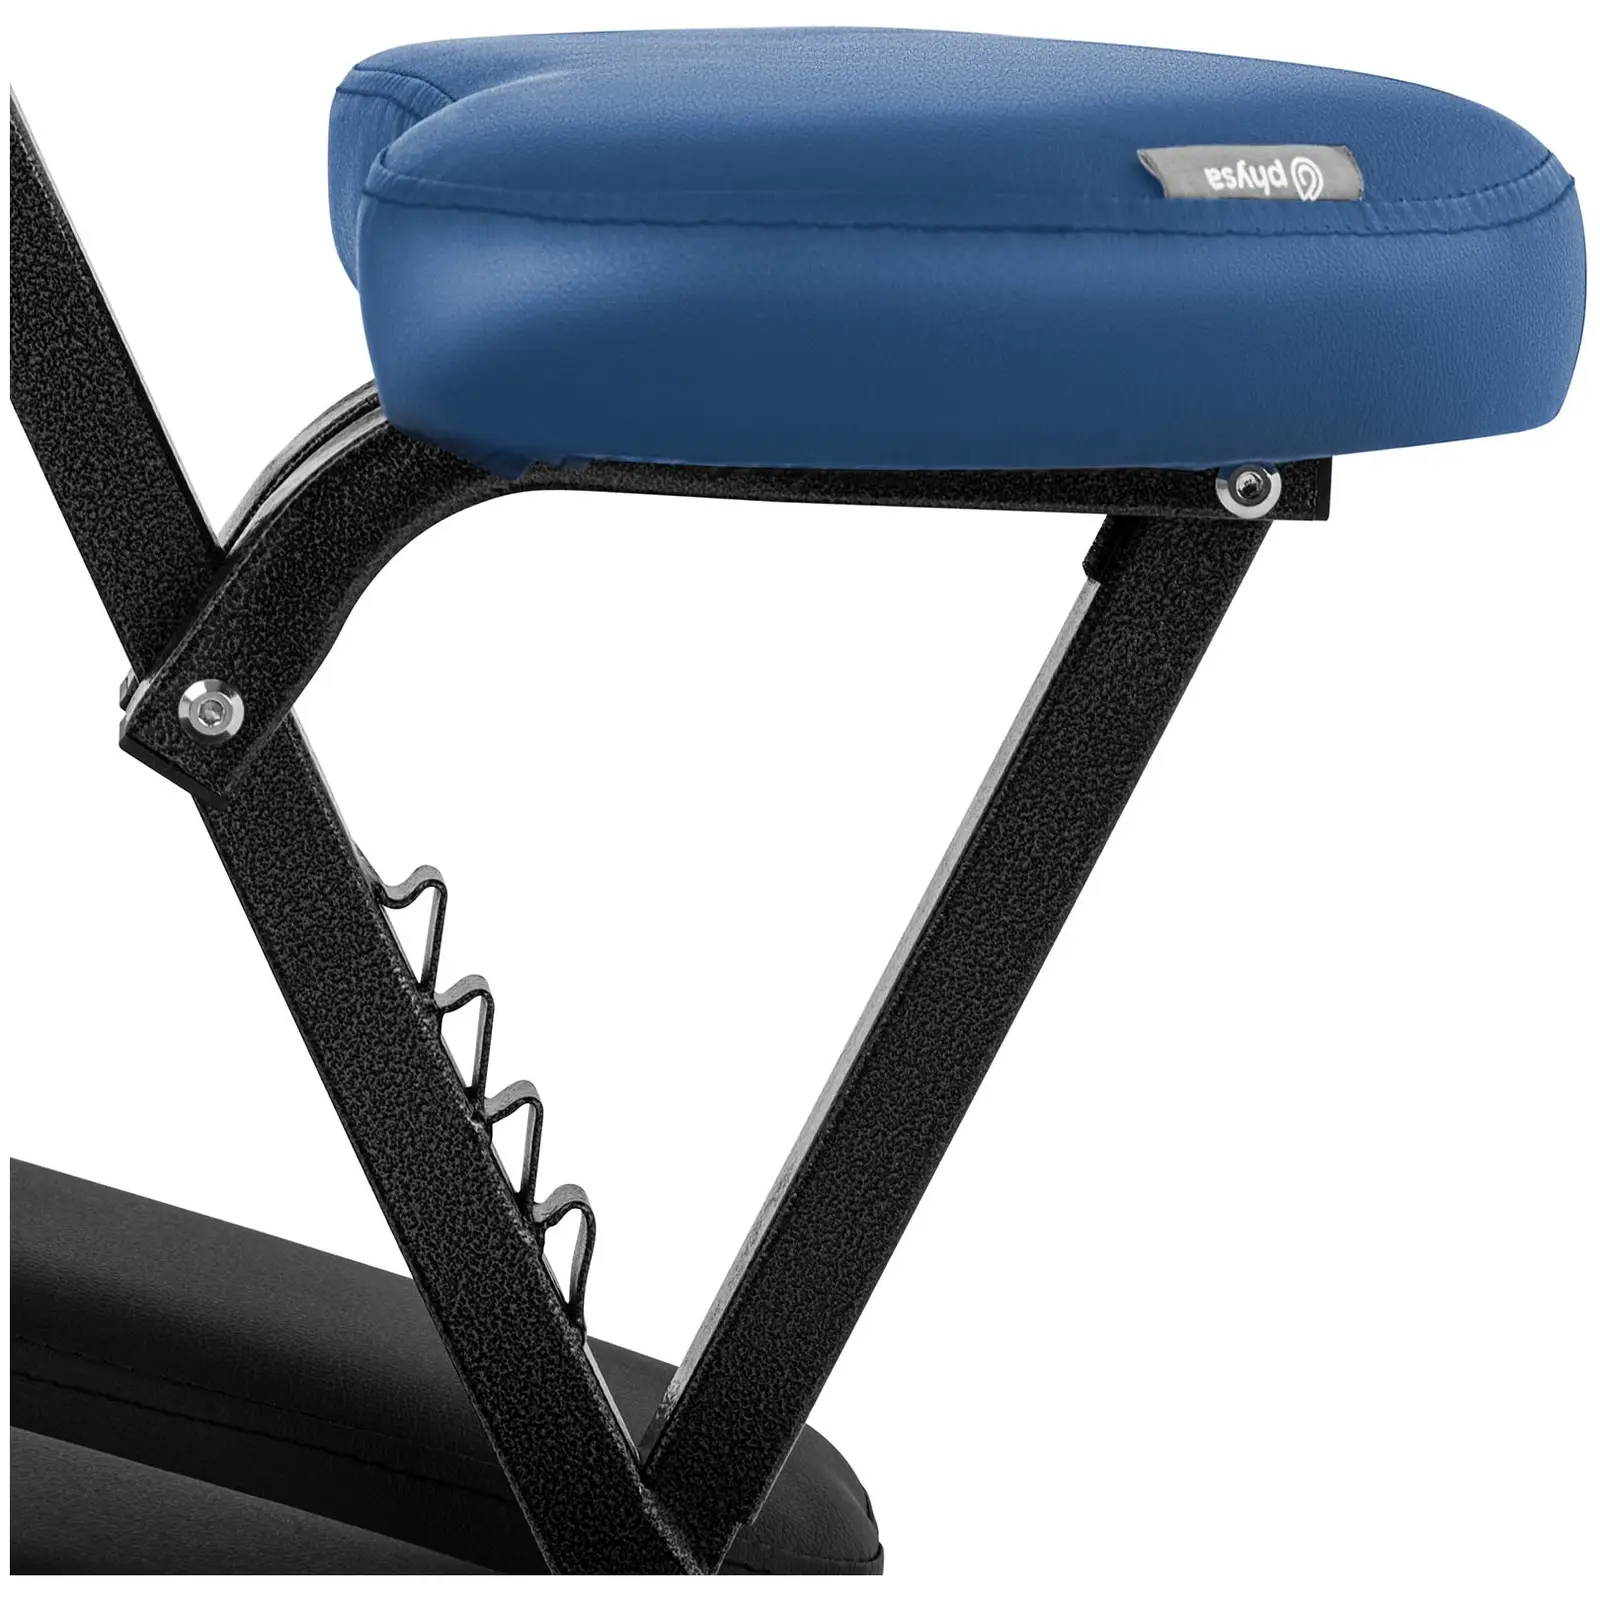 Zložljivi masažni stol - - 130 kg - Modra